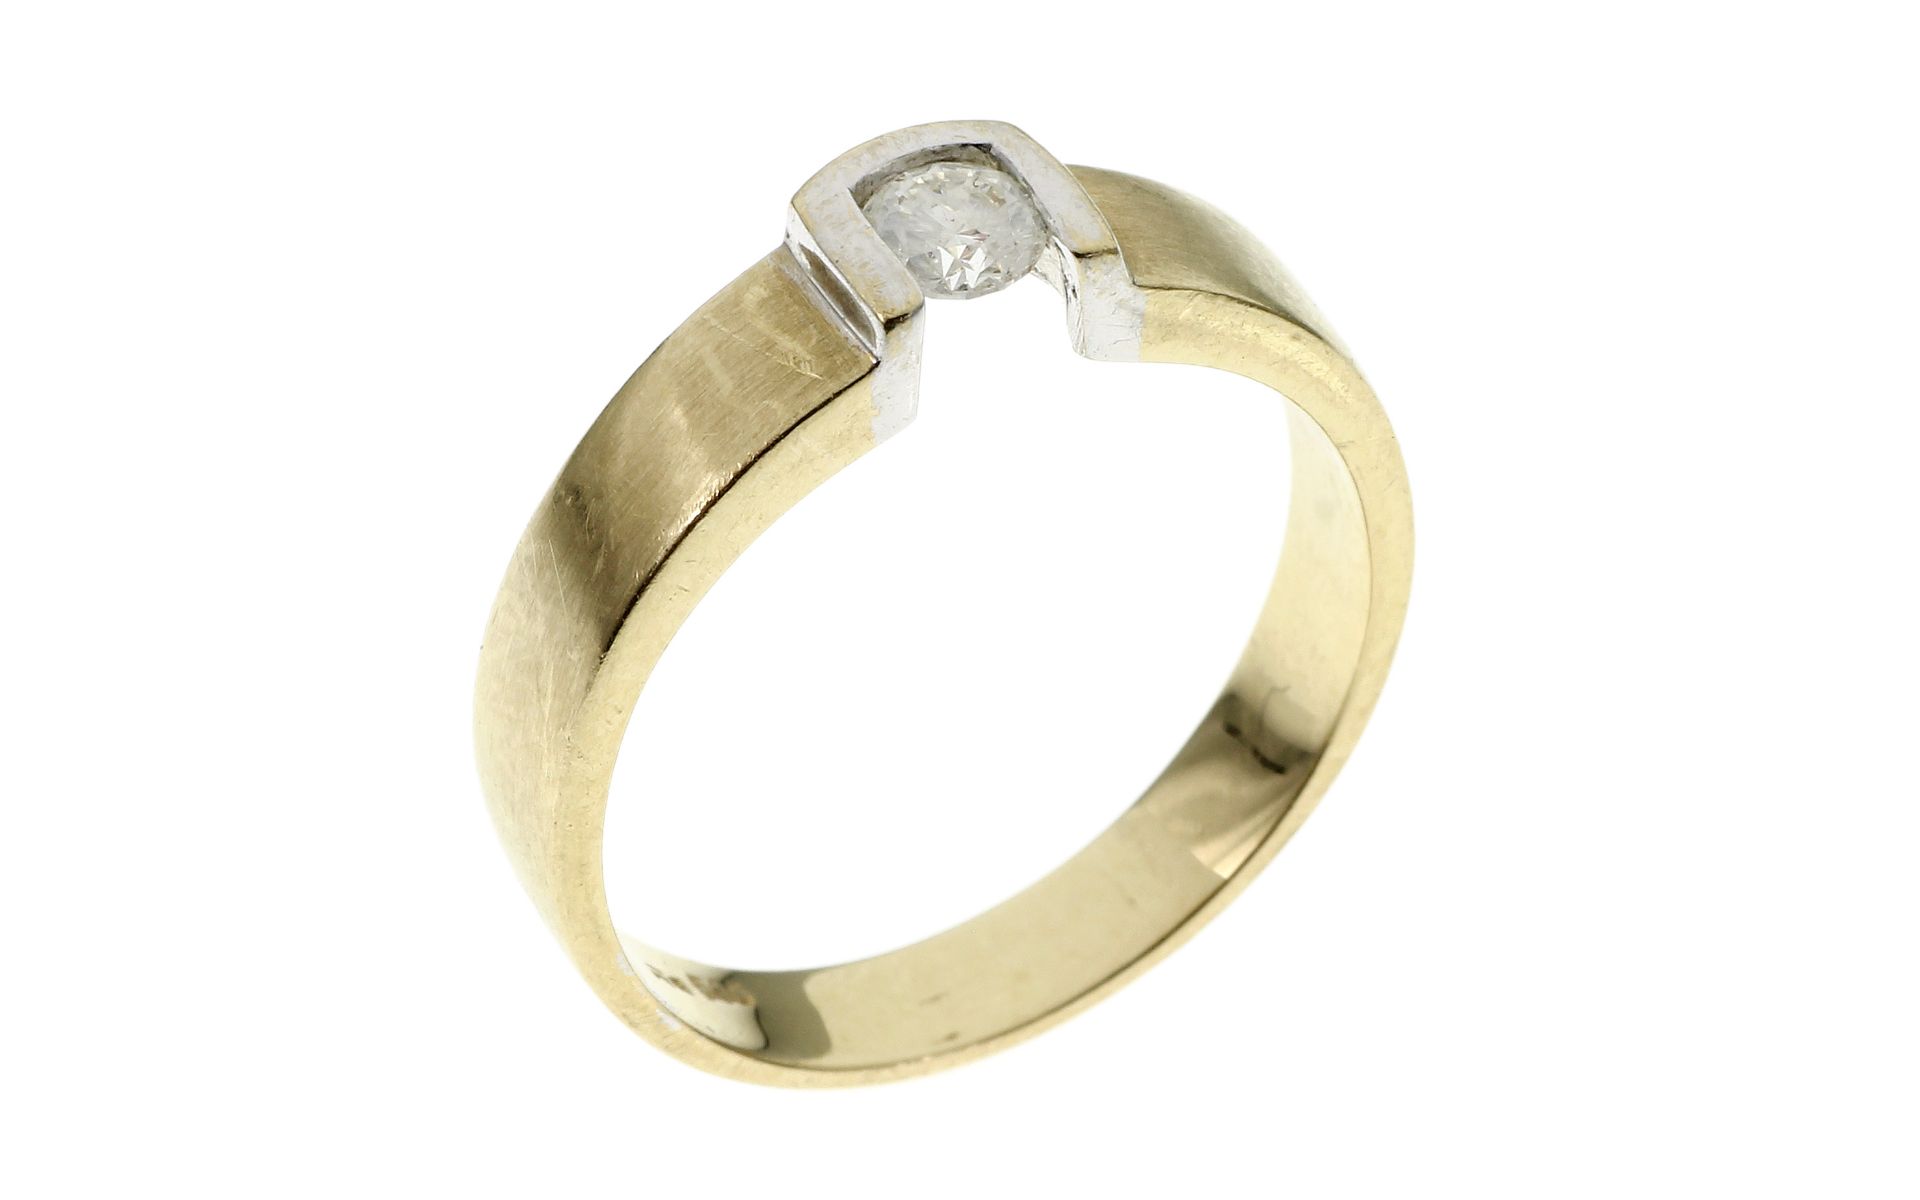 Ring 4.5g 585/- Gelbgold und Weissgold mit Diamant 0.18 ct. H/pi2. Ringgroesse ca. 58